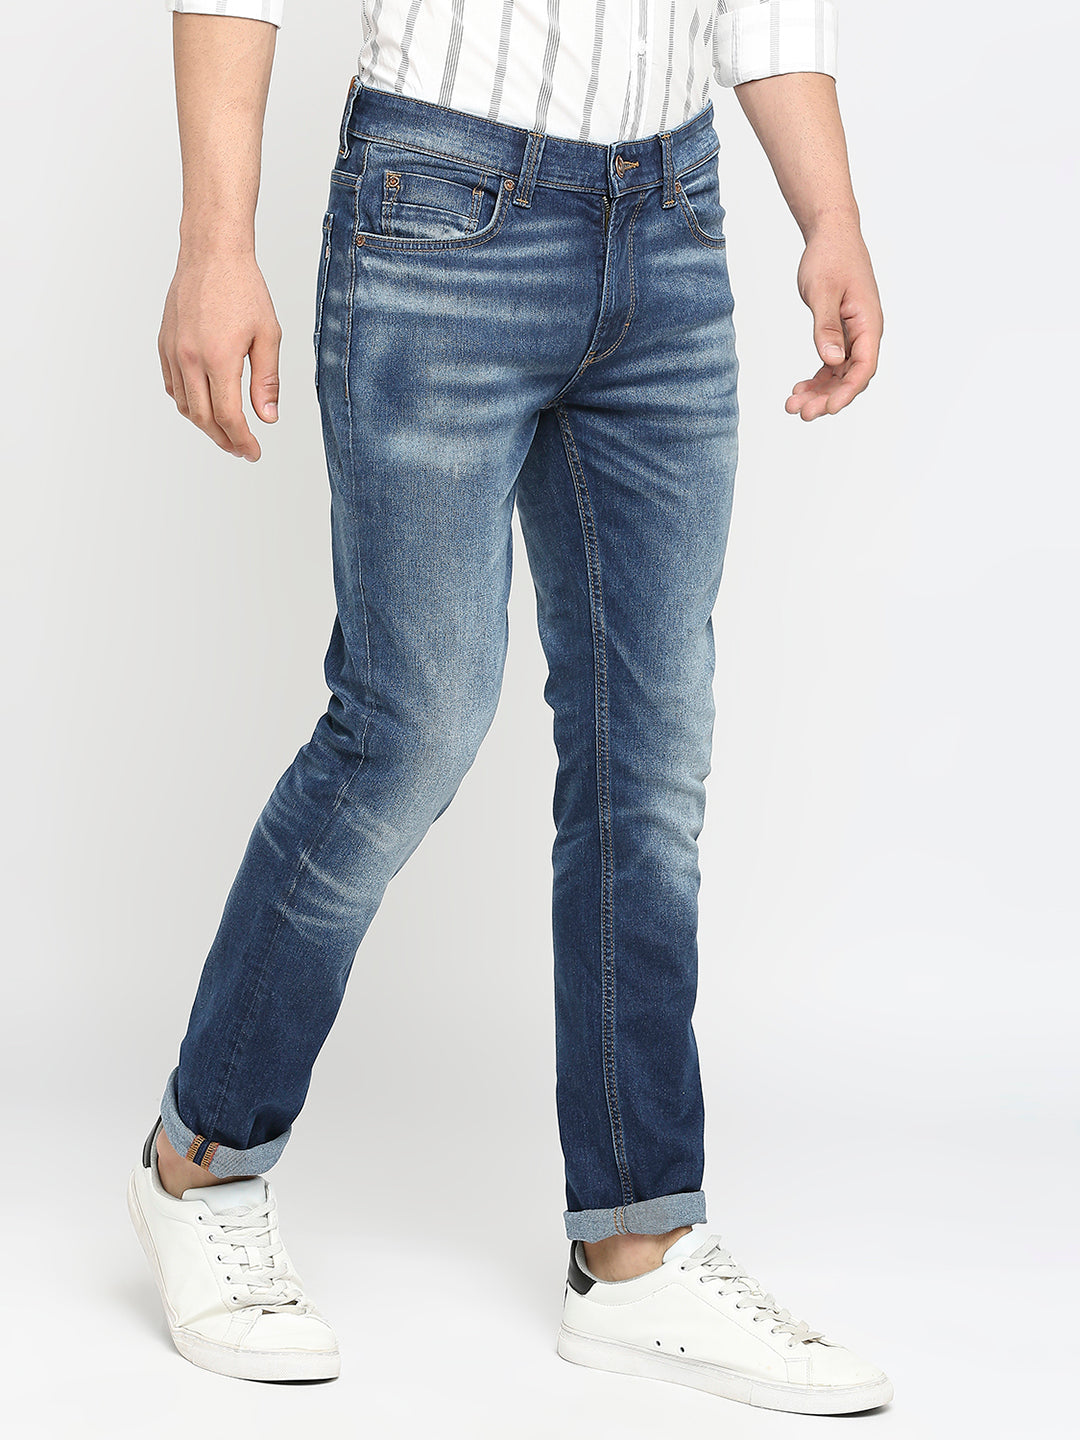 Spykar Men Dark Blue Cotton Regular Fit Narrow Length Jeans (Rover)